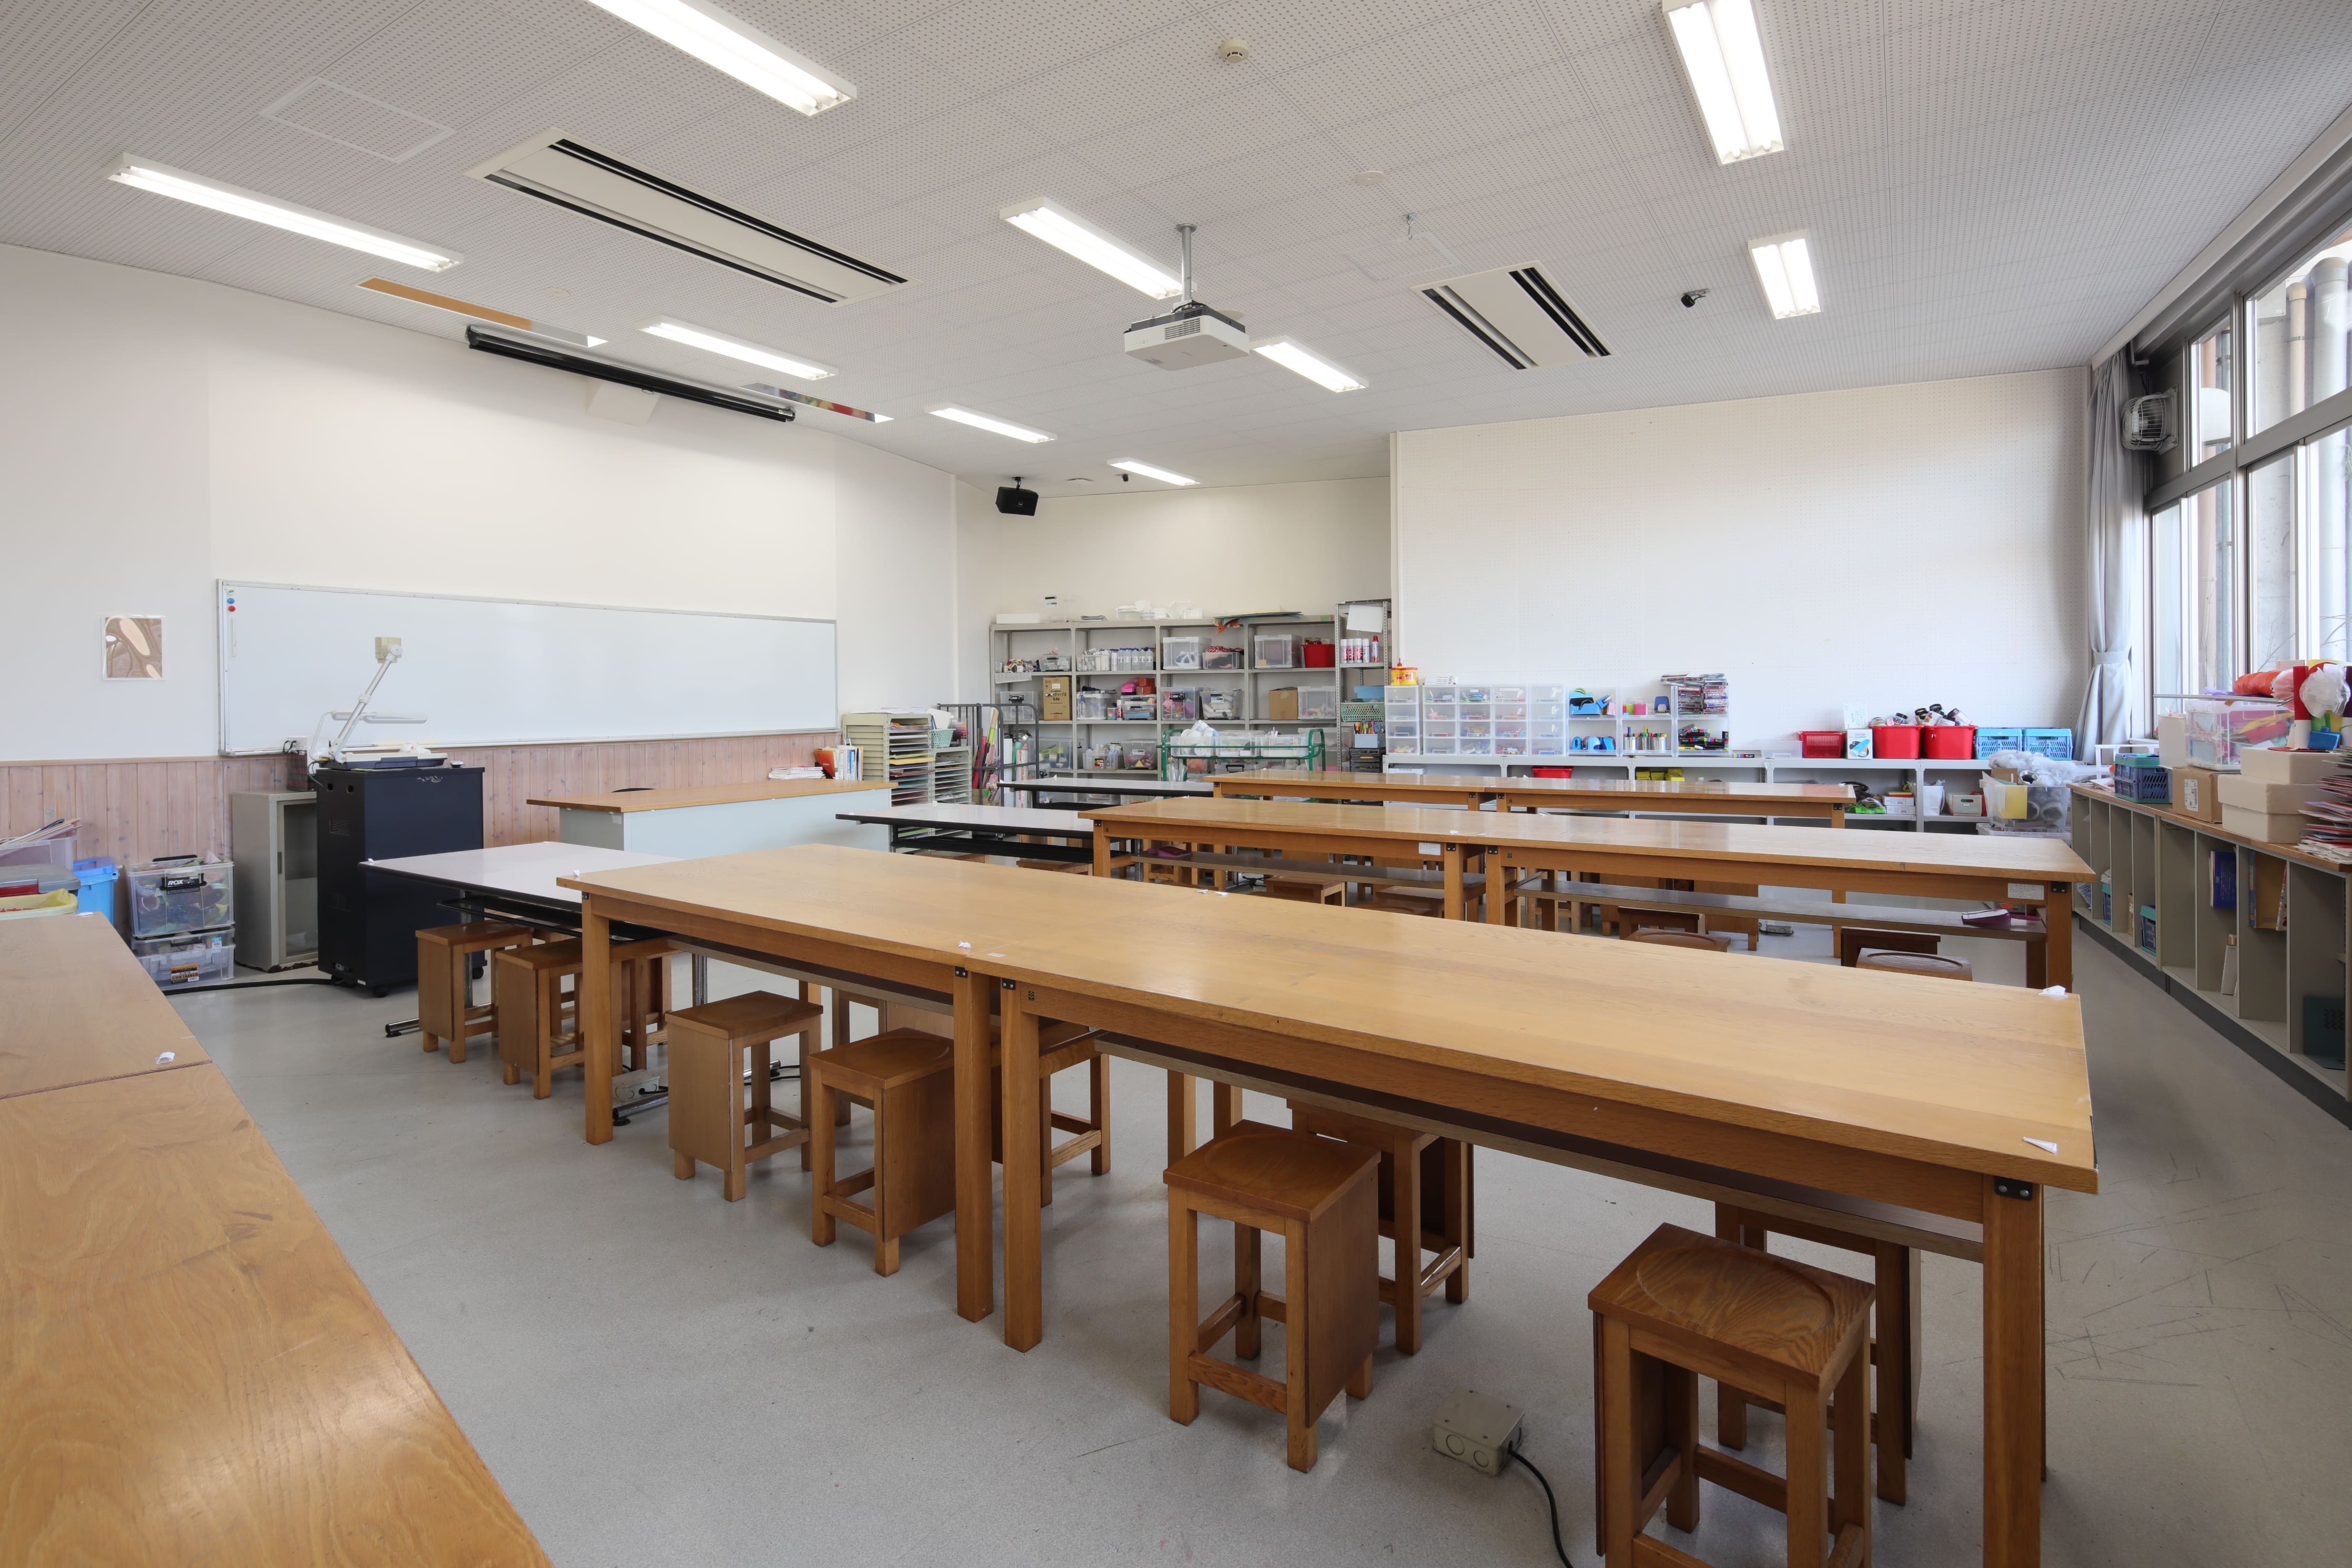 図工室：教育学部の学生が使用する図工室です。「図画工作科教育法」などの授業を行う場所です。